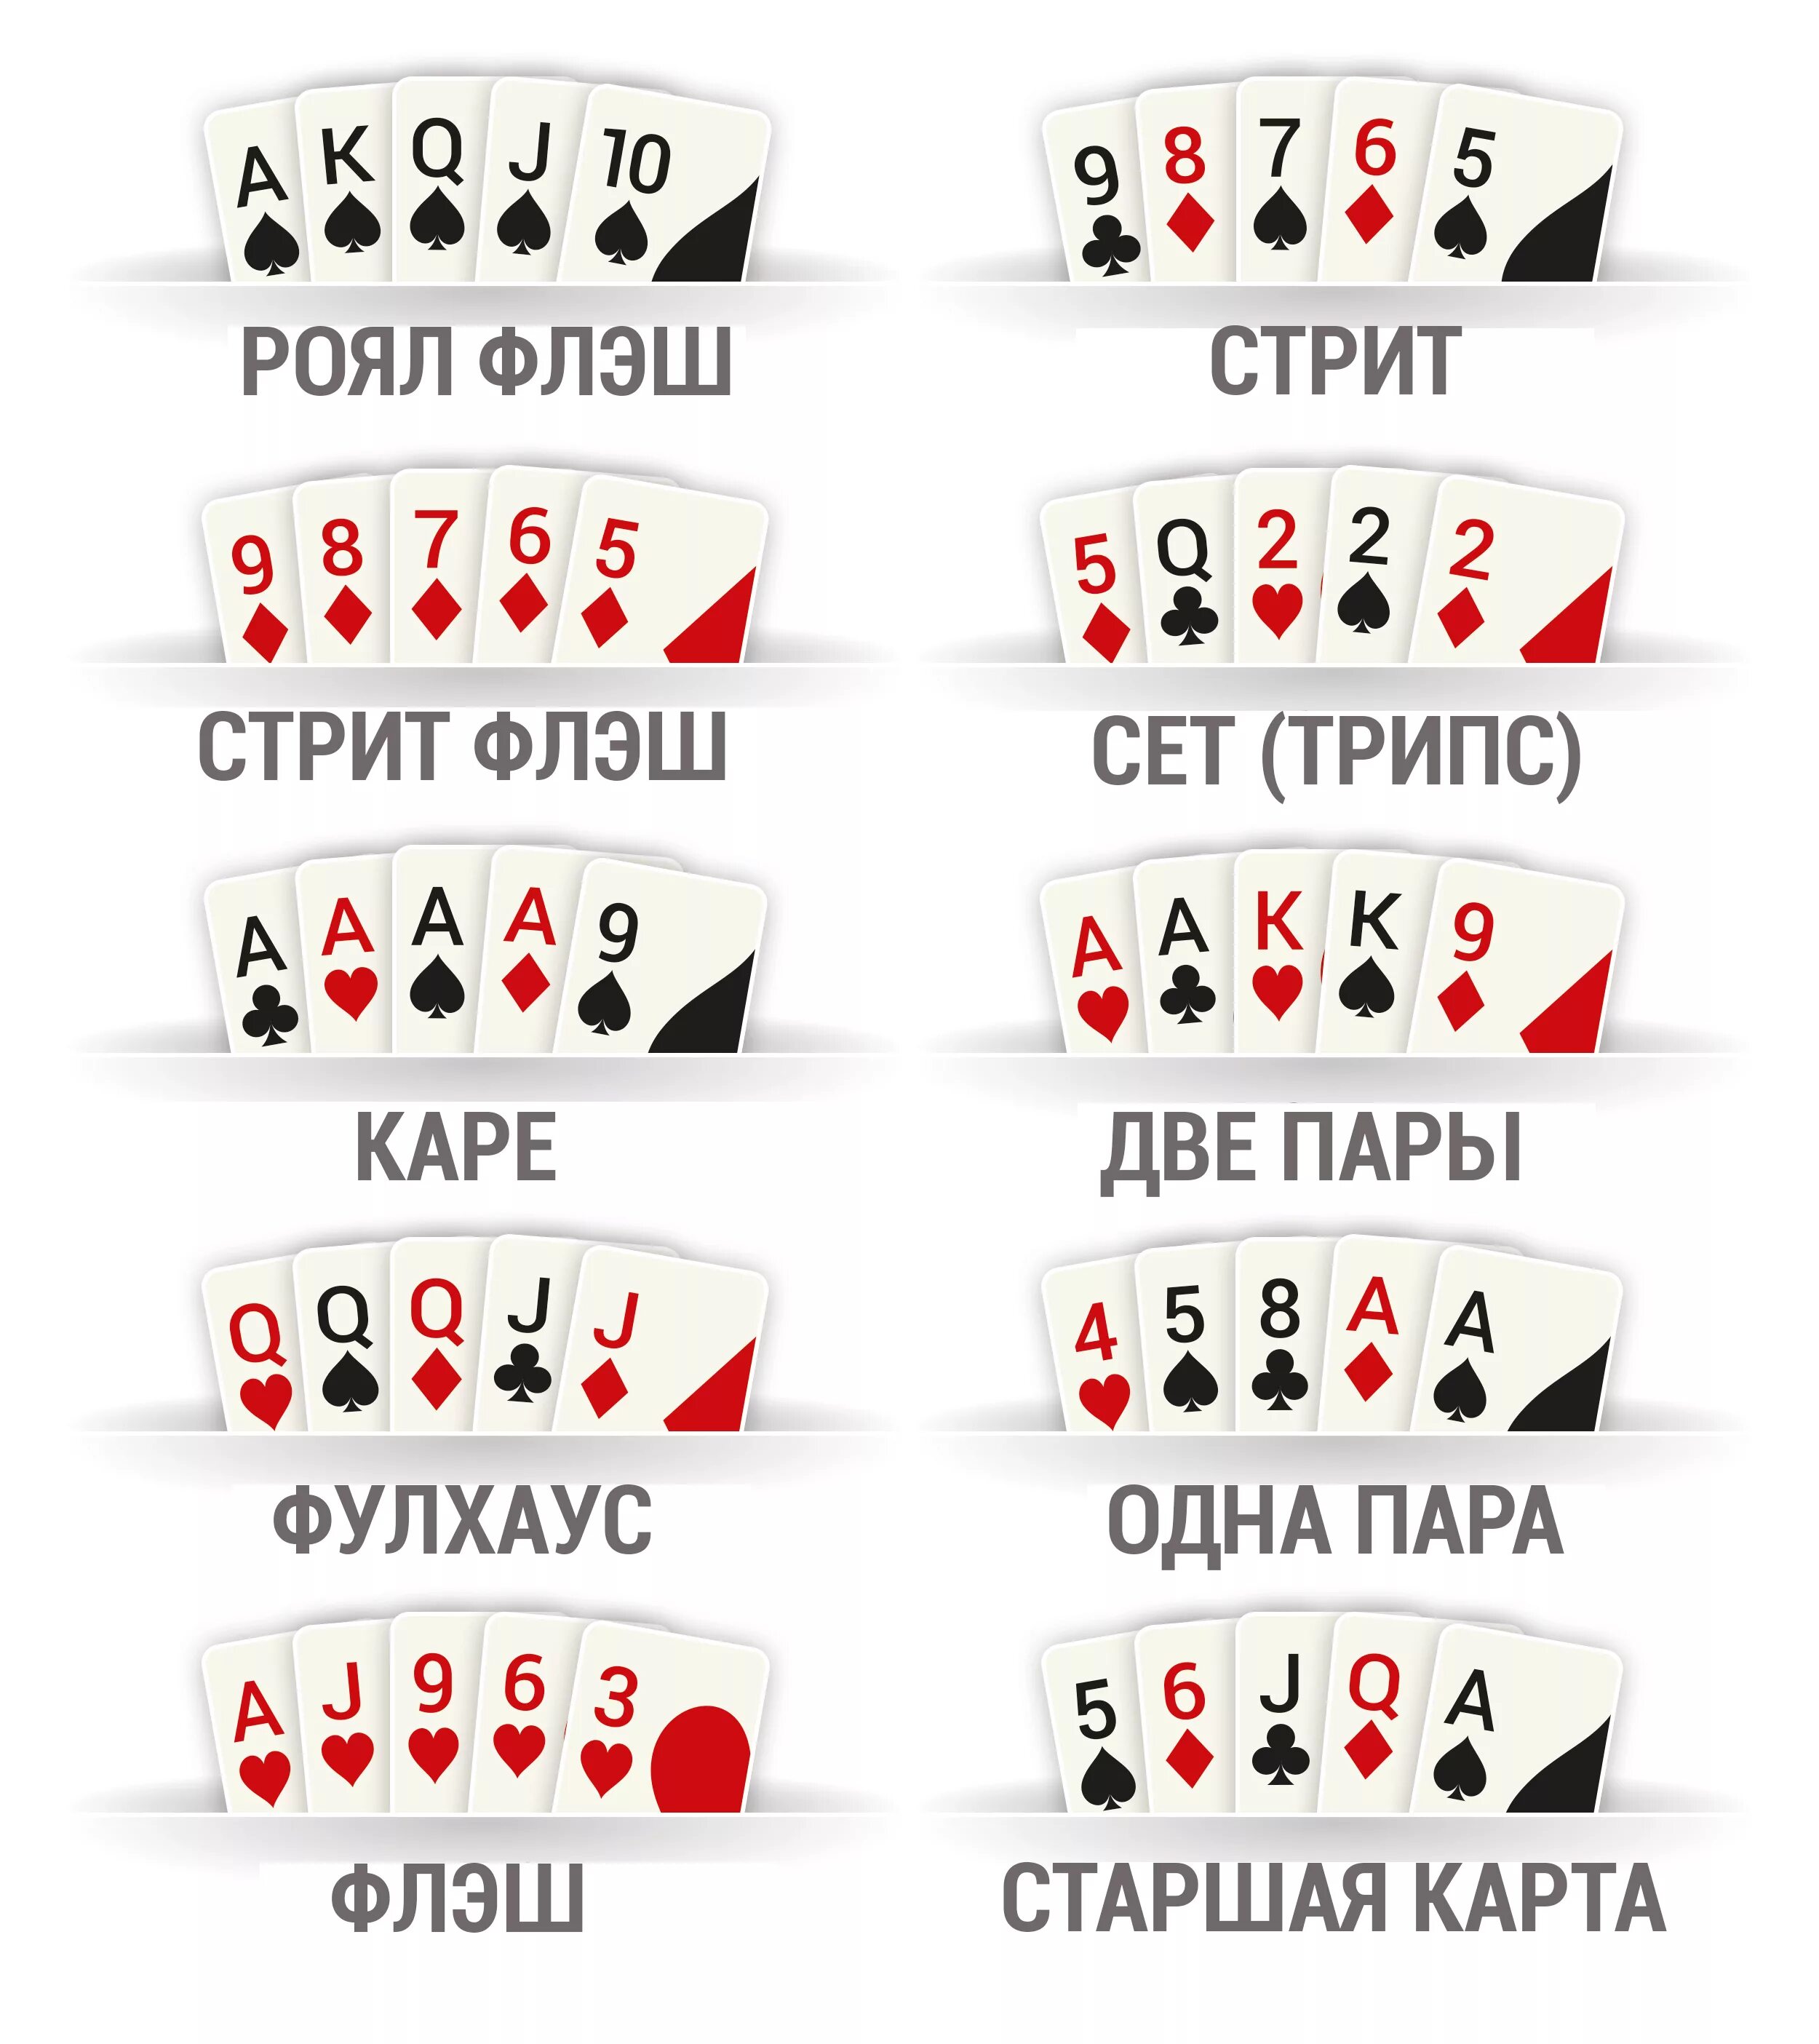 Правила игры в карты 54 карты. Комбинации карт в покере по старшинству. Комбинации в покере 2 карты. Комбинации карт в покере Техасский холдем. Порядок комбинаций в покере.